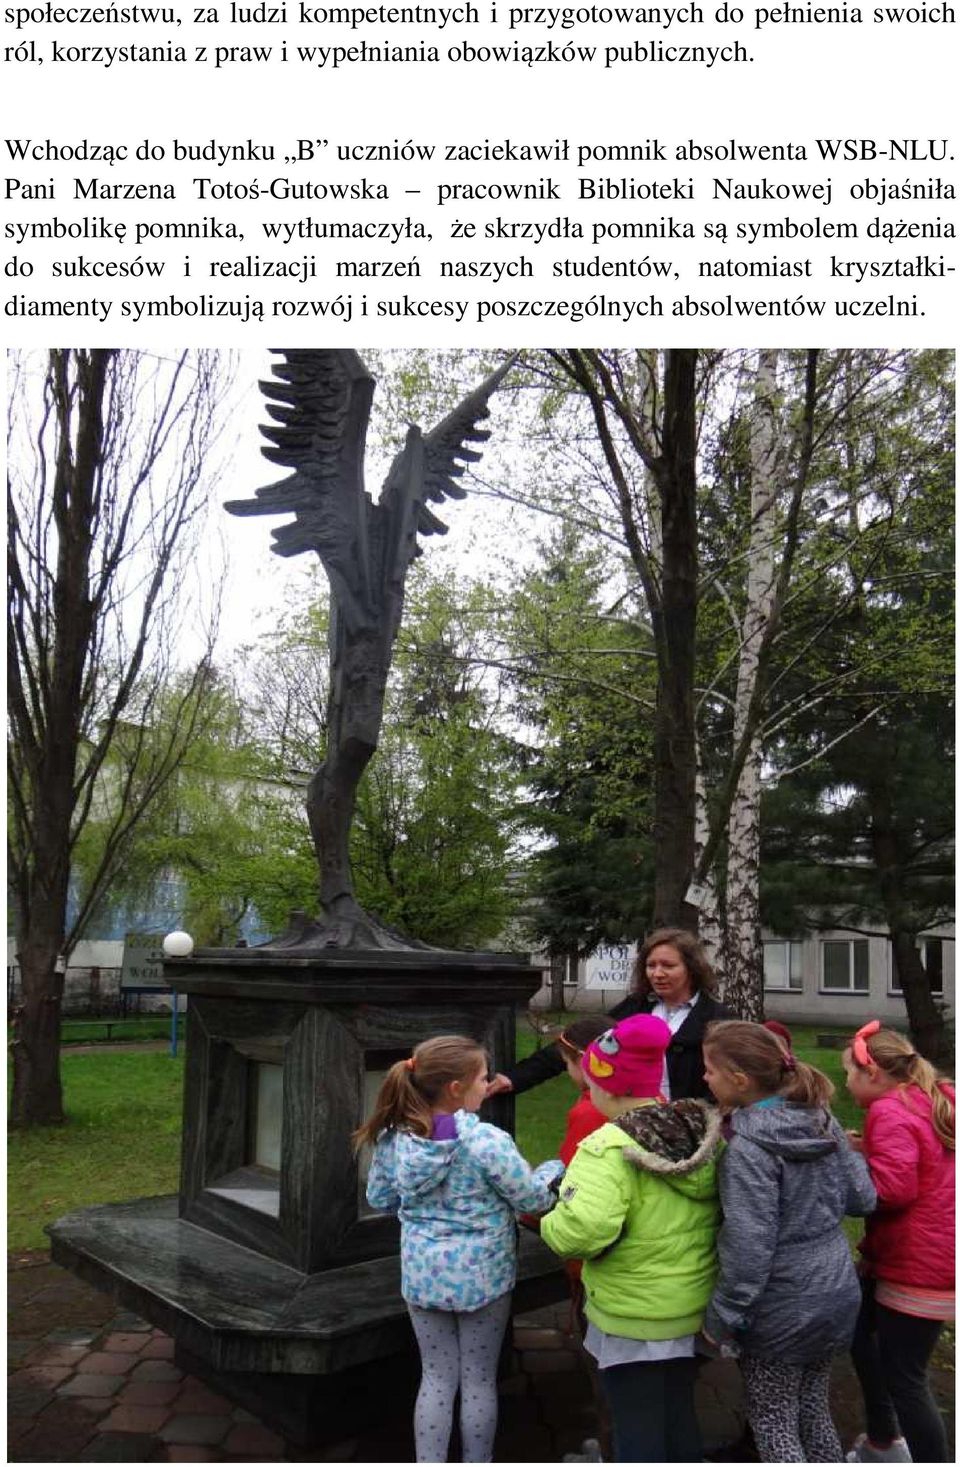 Pani Marzena Totoś-Gutowska pracownik Biblioteki Naukowej objaśniła symbolikę pomnika, wytłumaczyła, że skrzydła pomnika